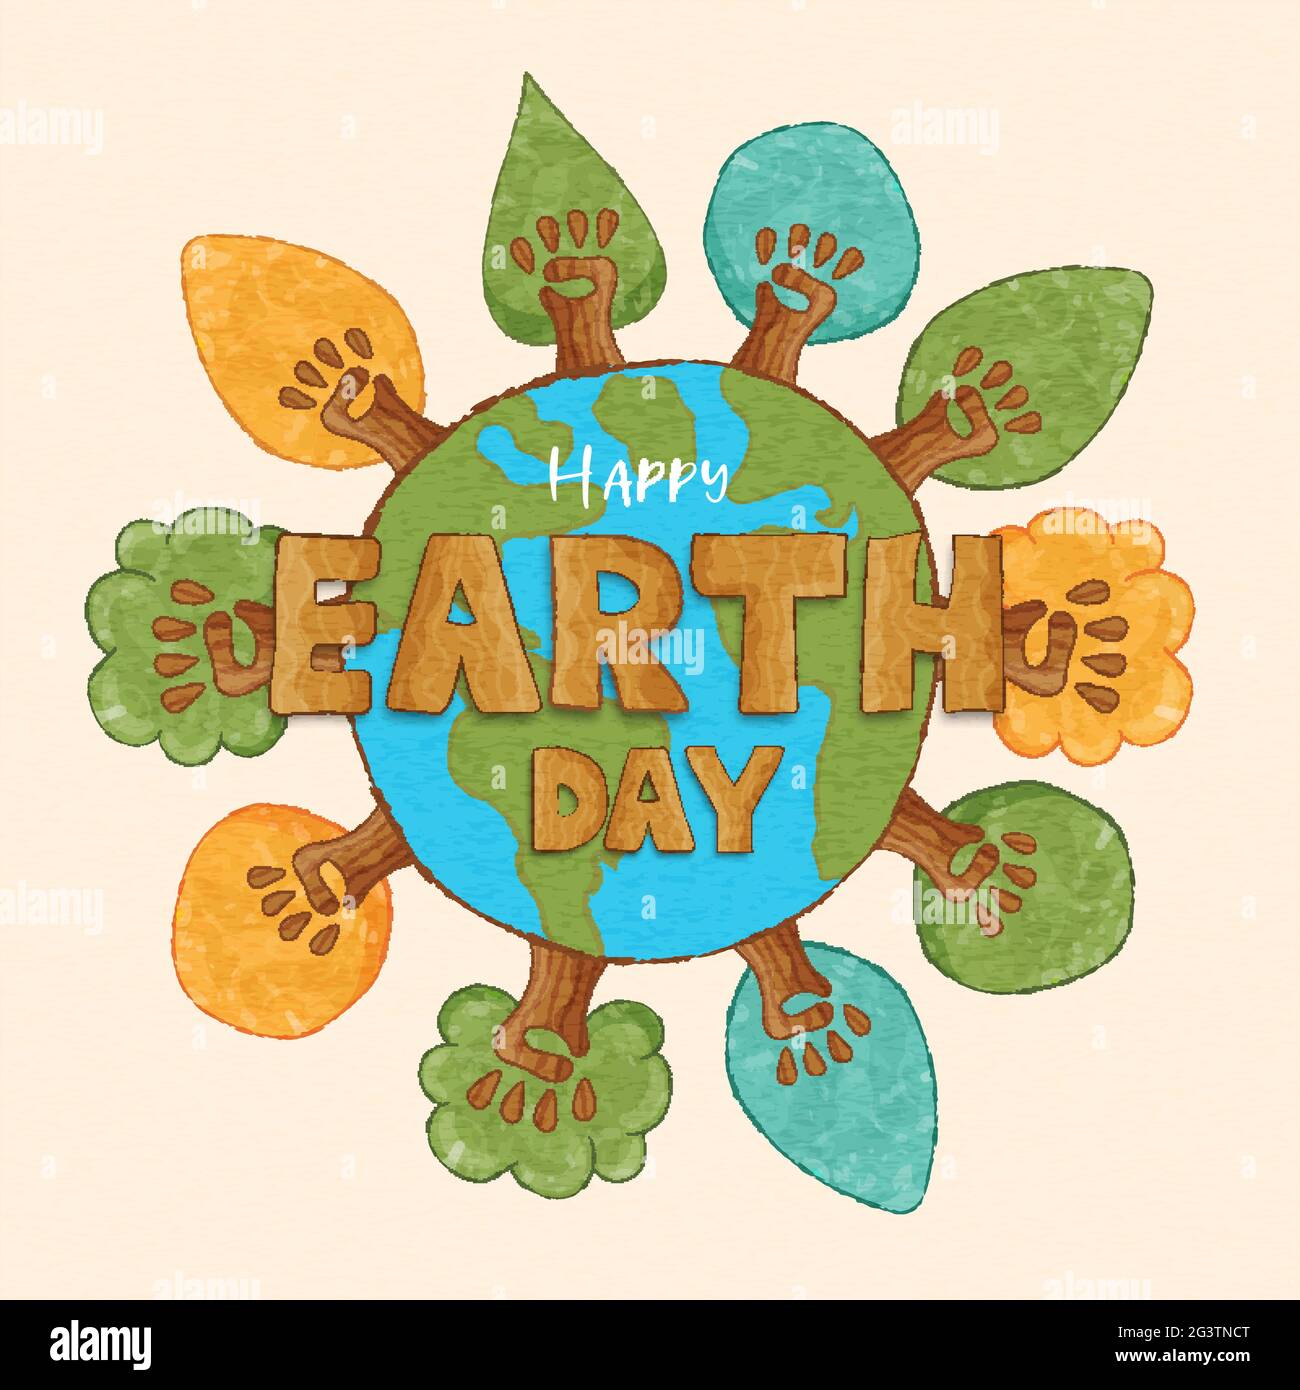 Happy Earth Day Grußkarte Illustration, grüner Baumwald aus menschlicher Hand Team zusammen. Konzept der sozialen Ökologie-Kampagne im lustigen Cartoon-Stil Stock Vektor